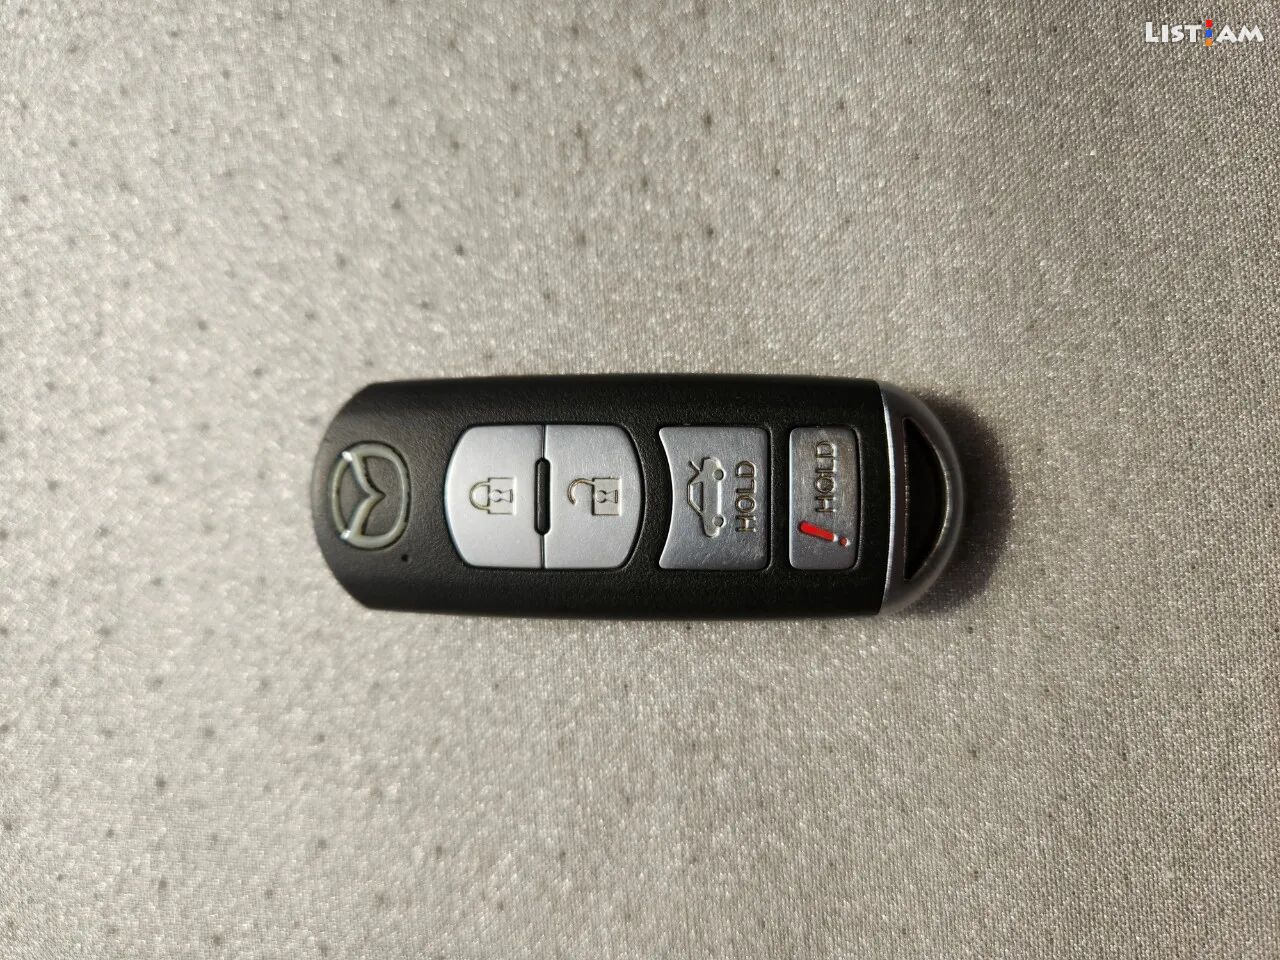 Mazda key